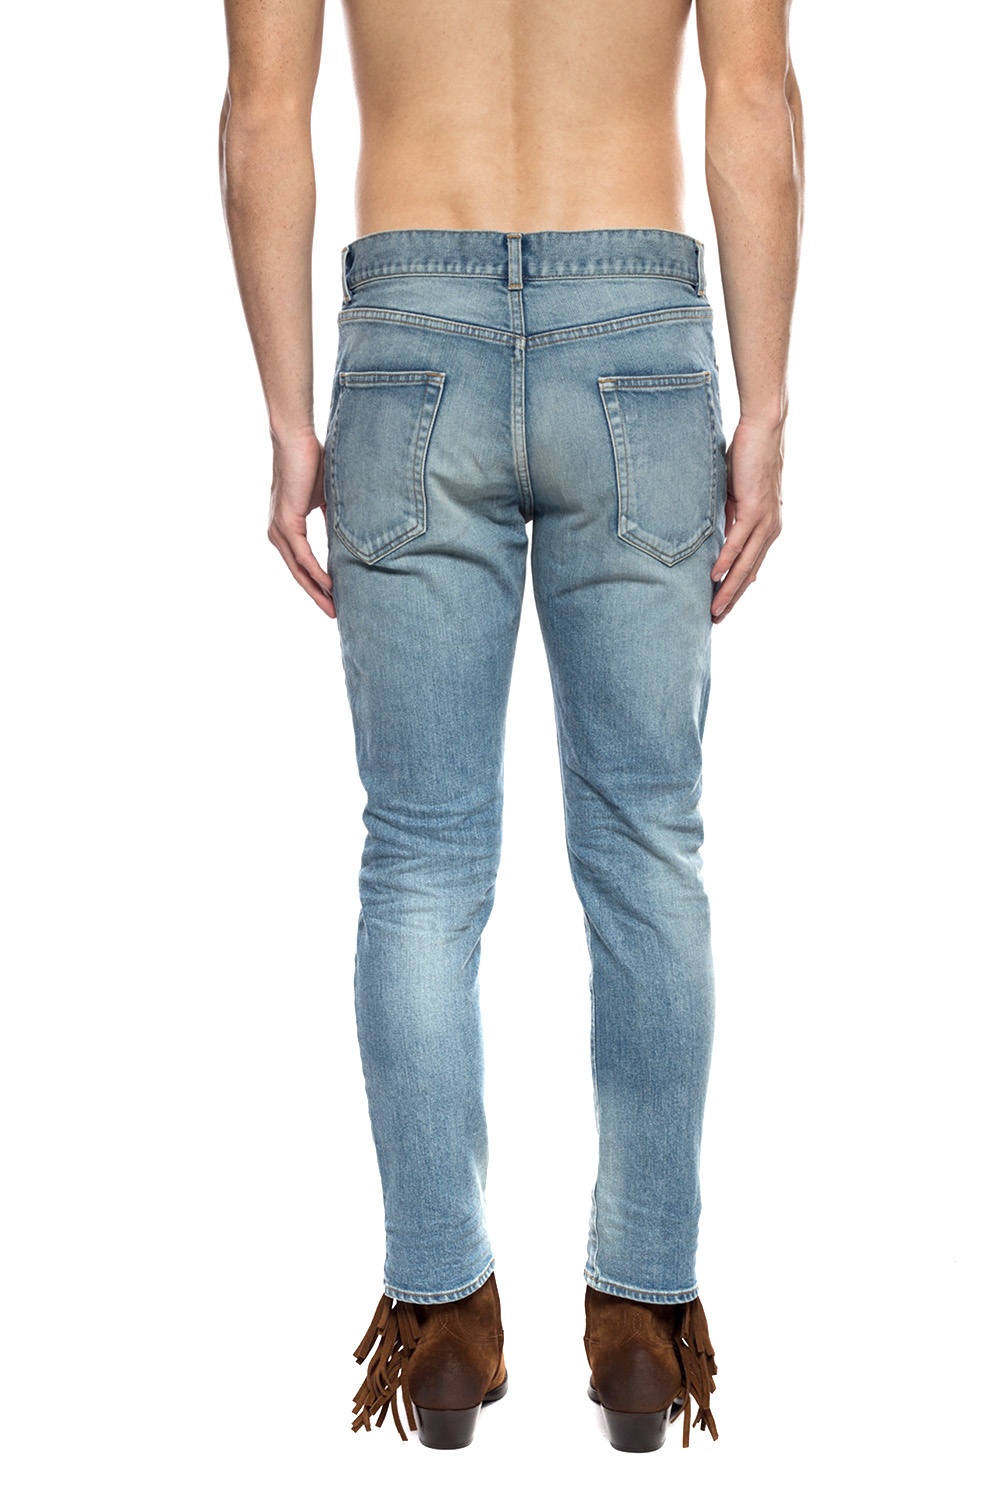 Saint Laurent Jeans with holes | Men's Clothing | Vitkac